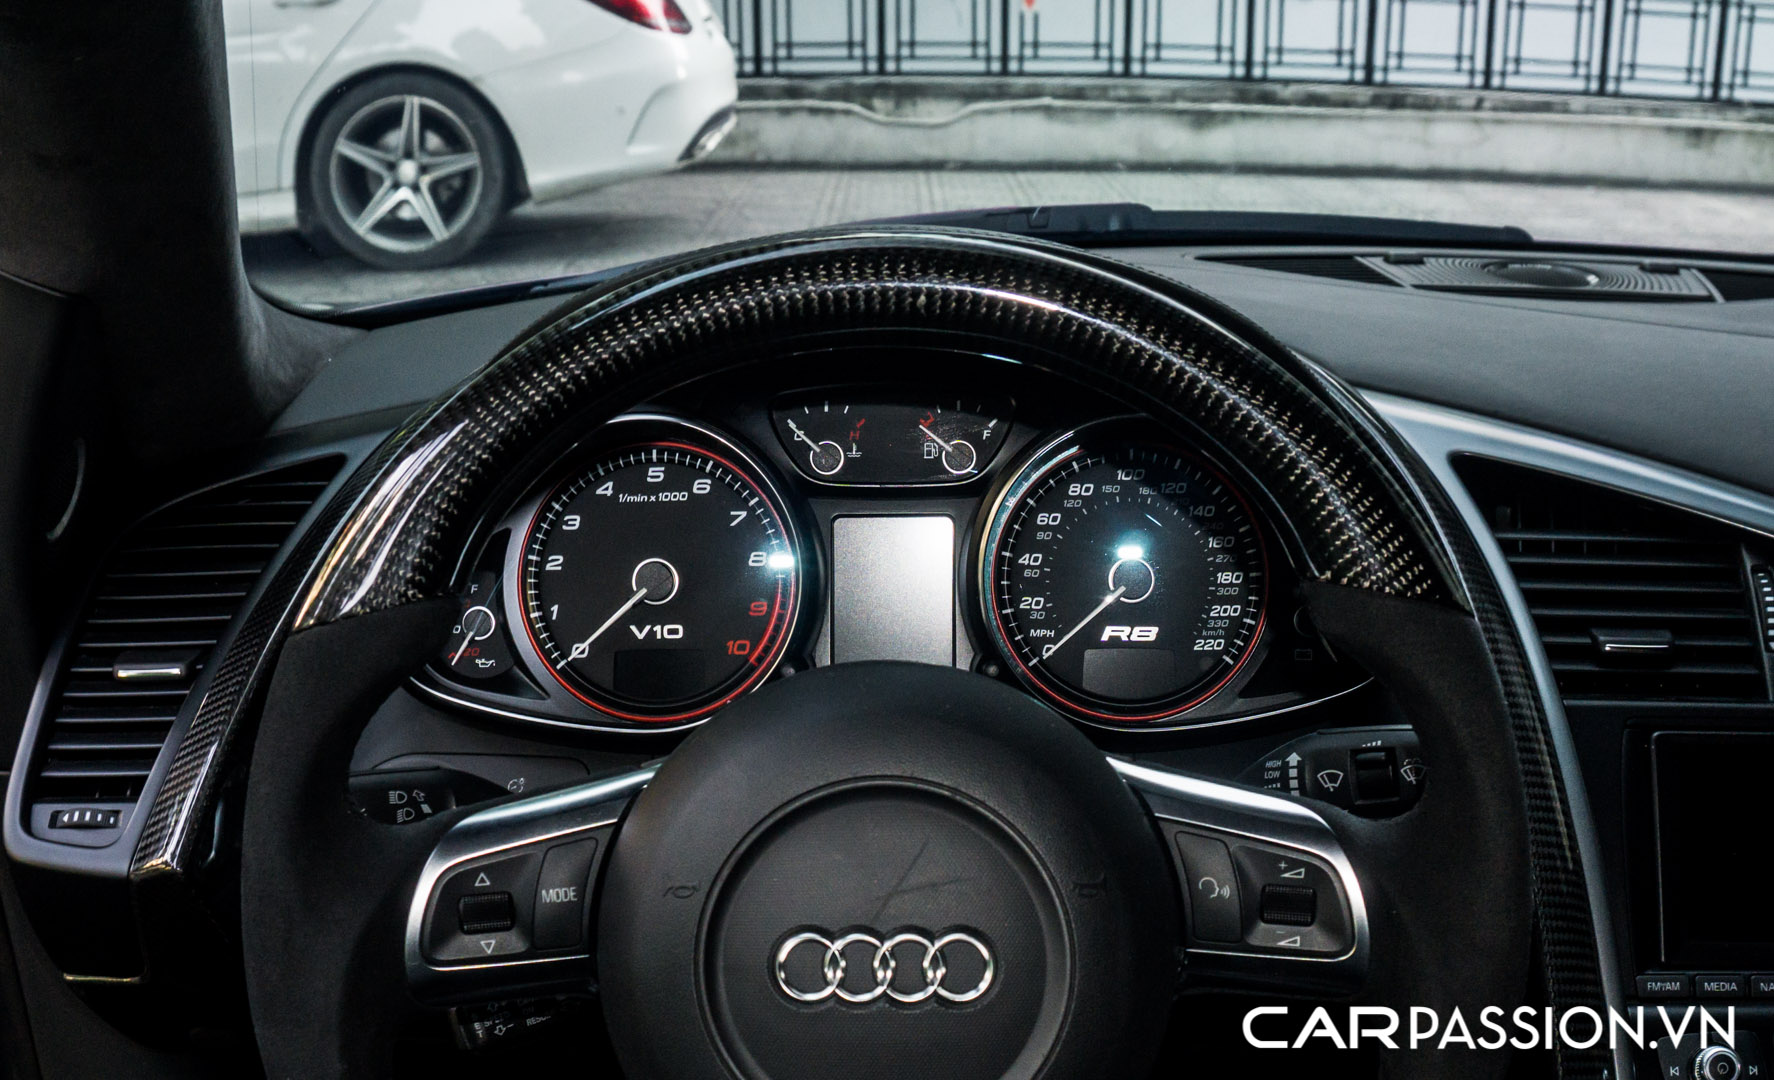 CP-Audi R8 V10 số sàn độ khủng (35).jpg